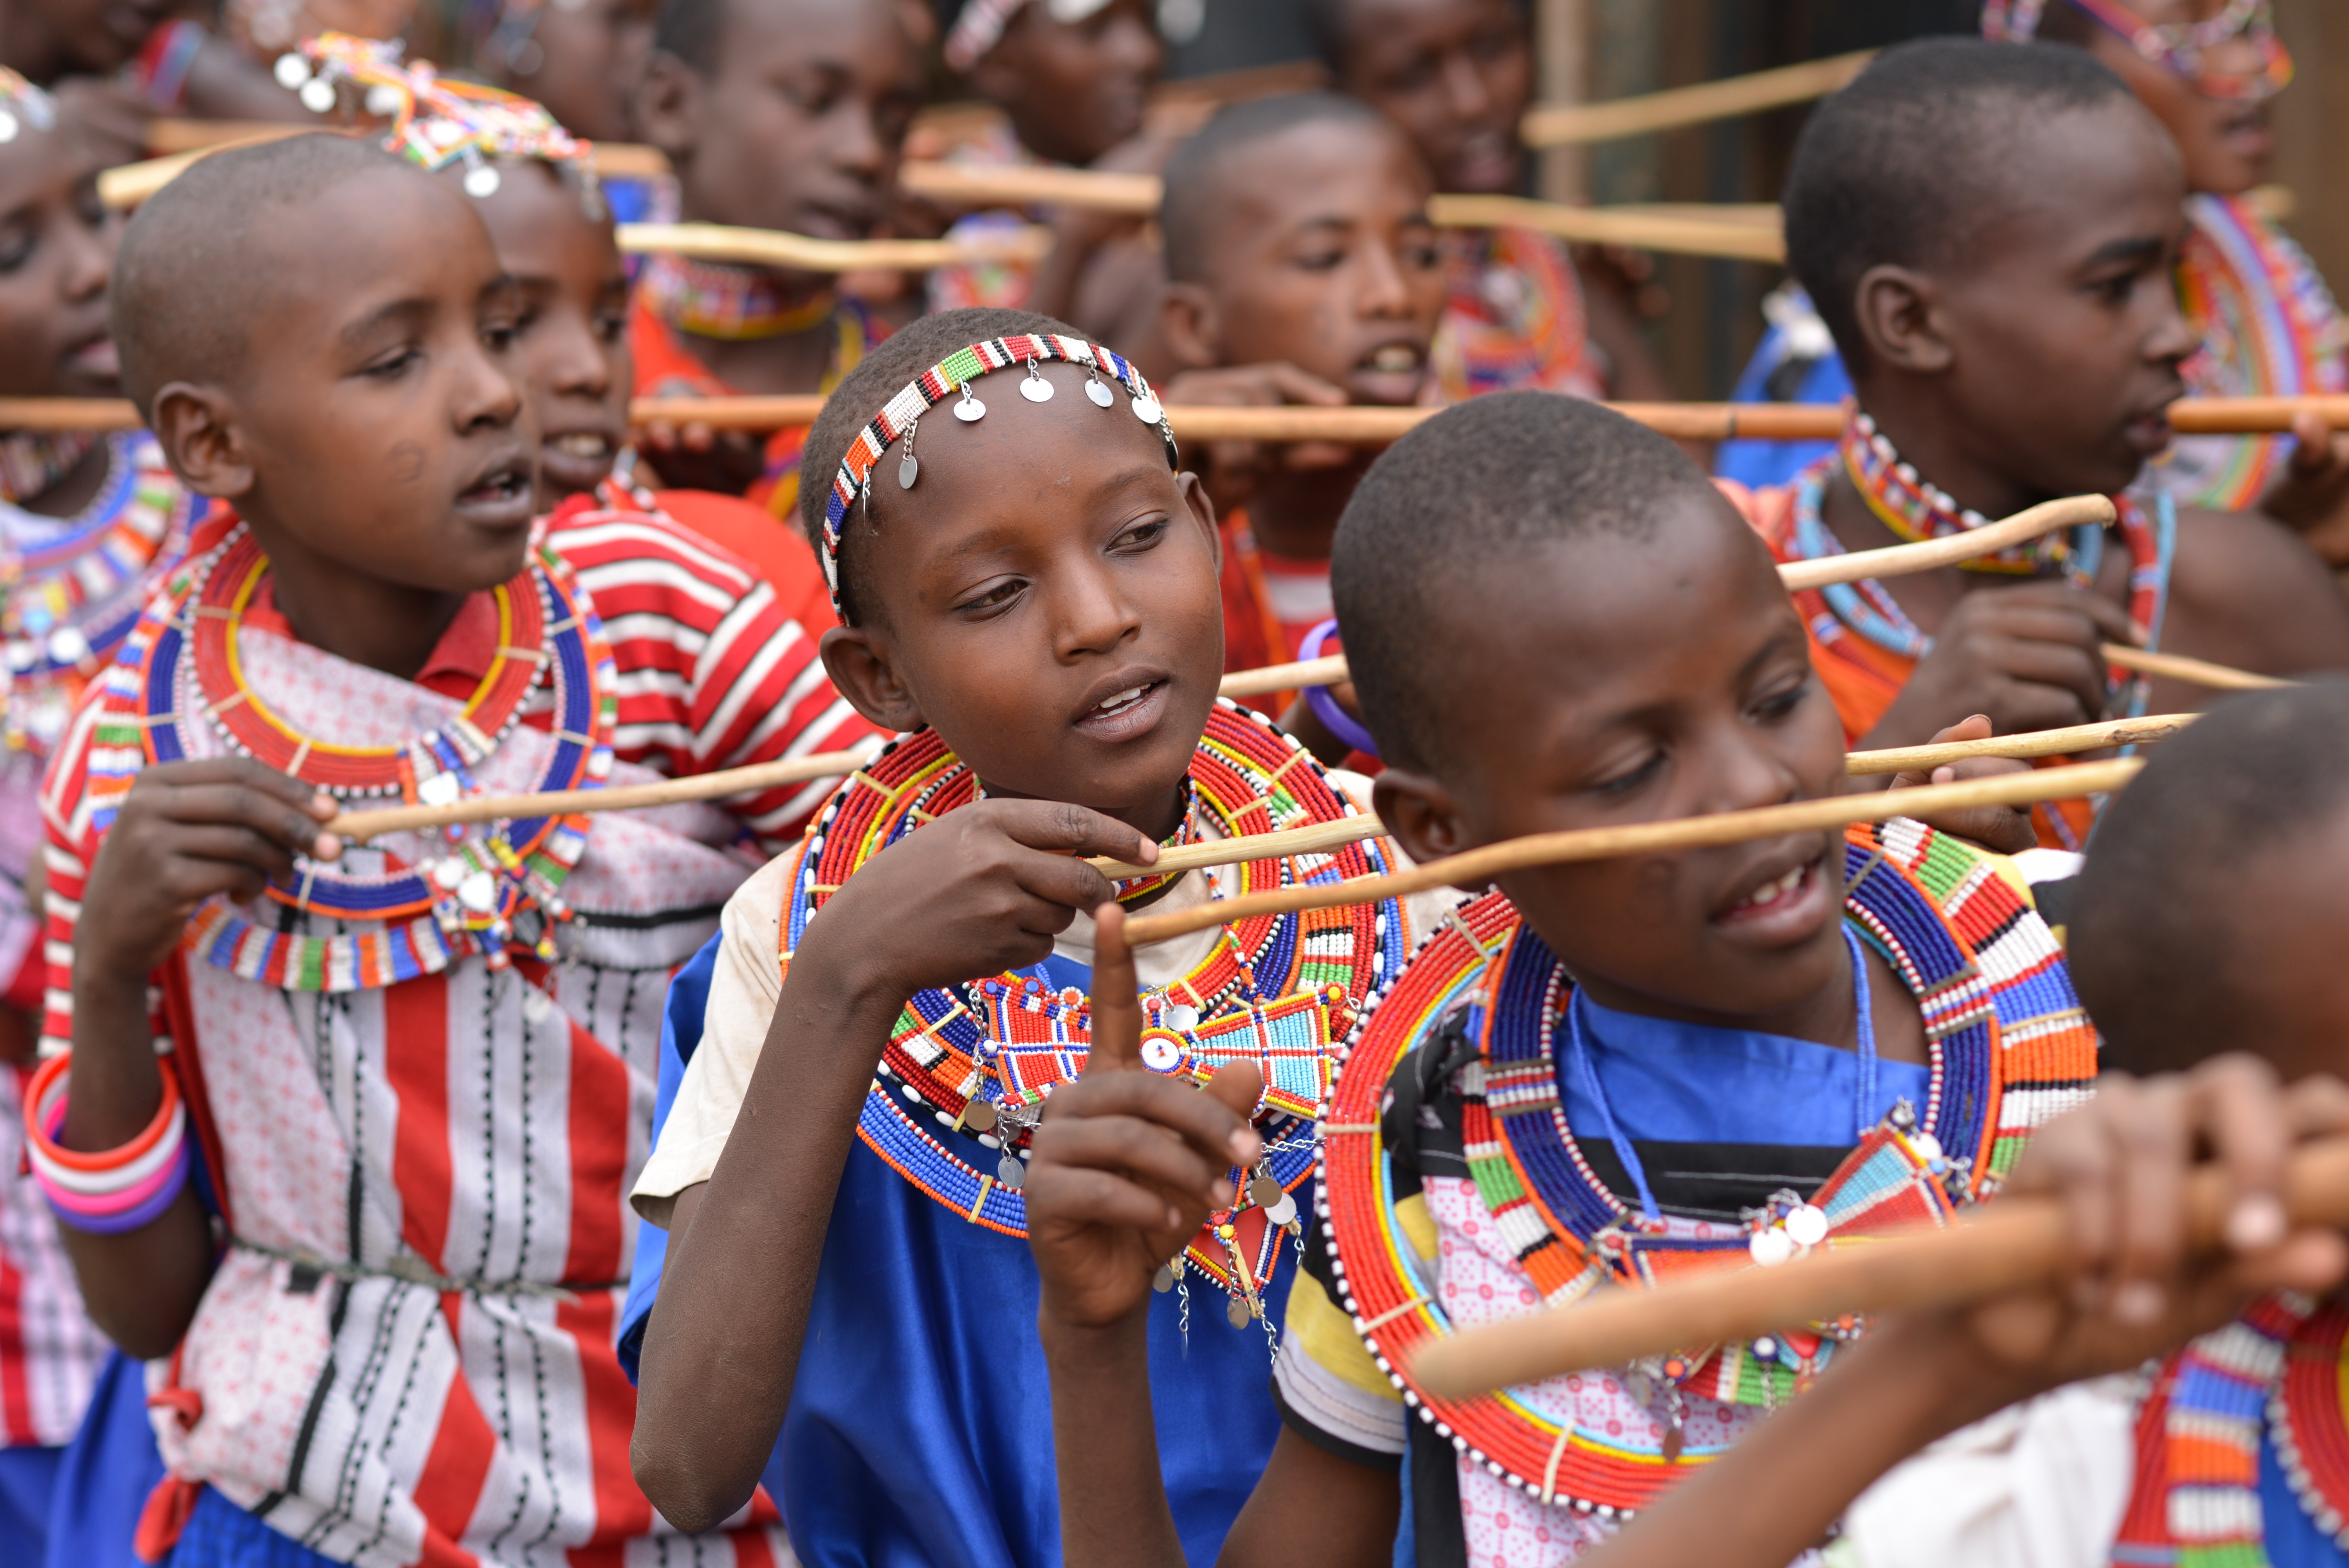 children from Kenya